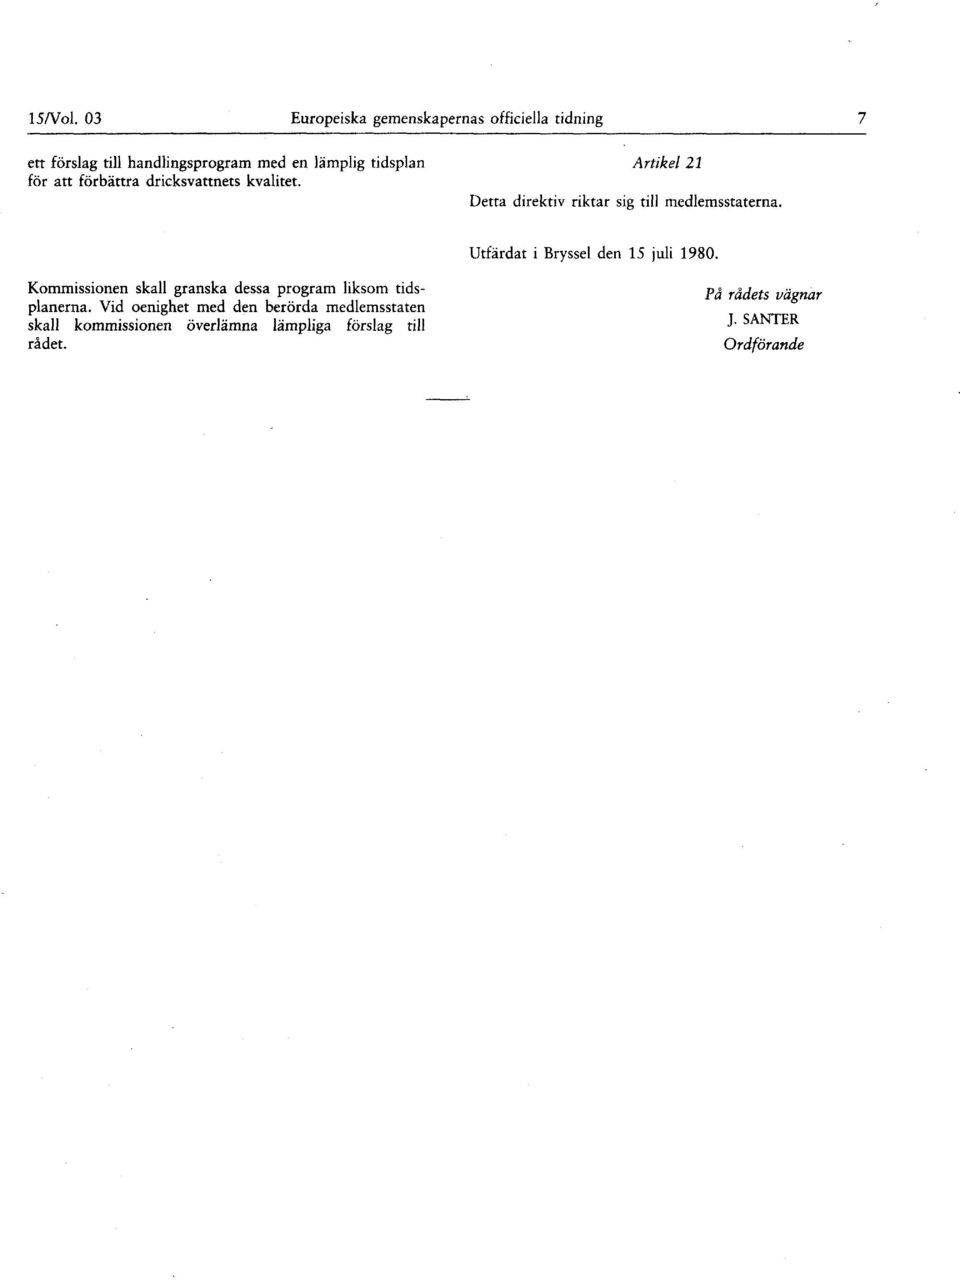 Utfärdat i Bryssel den 15 juli 1980 Kommissionen skall granska dessa program liksom tidsplanerna Vid oenighet